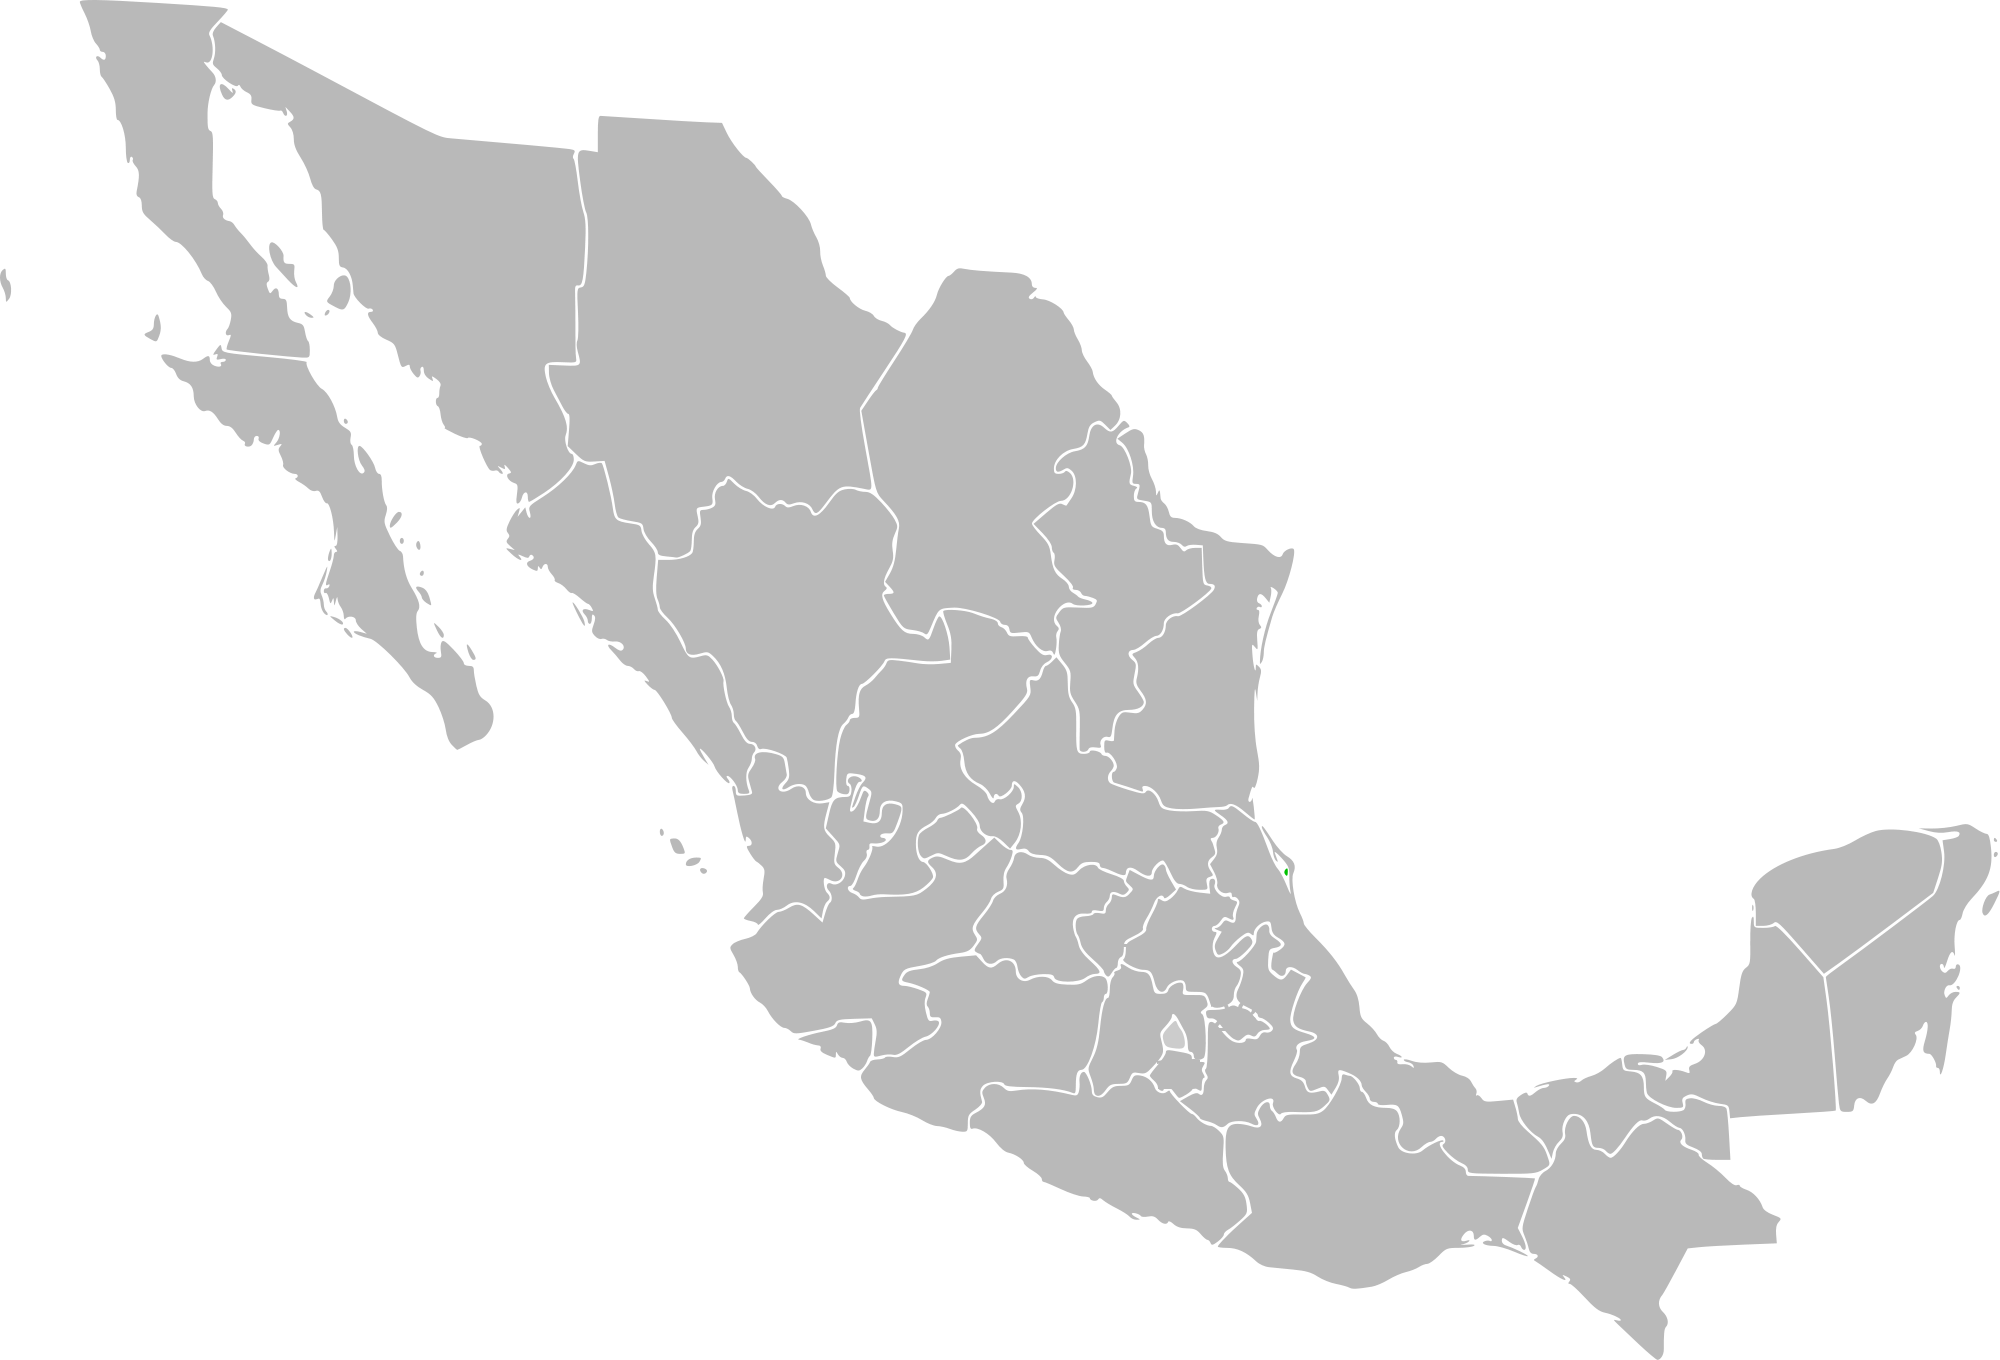 File:Mexico-States-President-